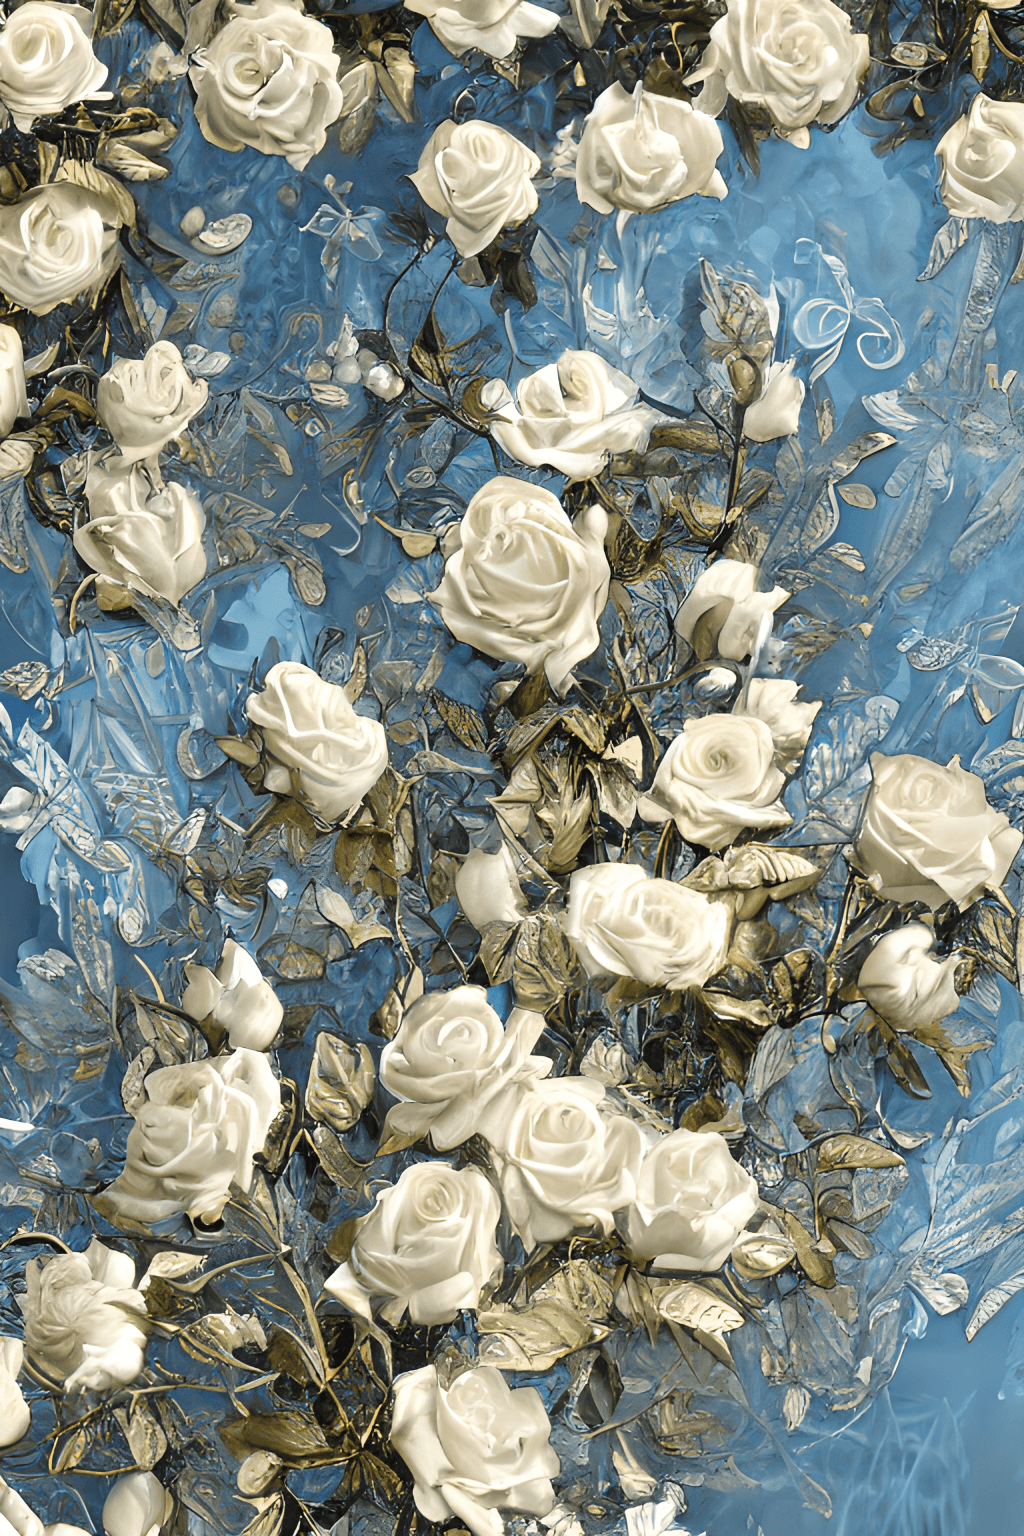  Weiße Rosen Hintergrundbild 1024x1536. Atemberaubende 8K Digitalmalerei eines realistischen Zweigs voller weißer Rosen, Metallschmetterlinge, Perlen, Goldstaub und leuchtenden vergoldeten Gravuren · Creative Fabrica